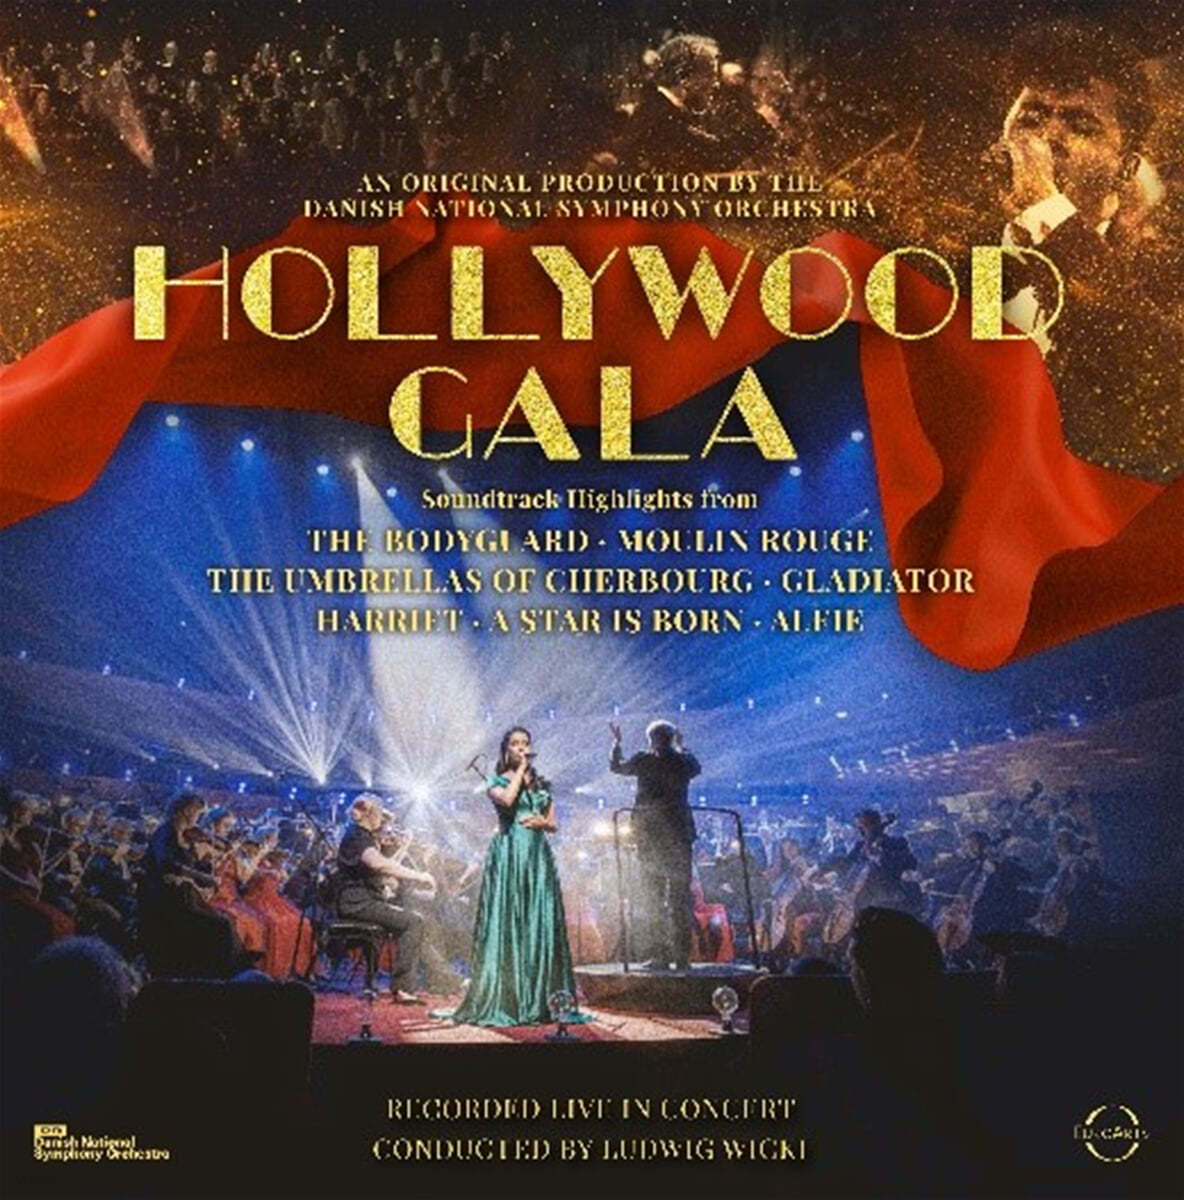 덴마크 국립 오케스트라가 연주하는 영화음악 (Danish National Symphony Orchestra - Hollywood Gala) [LP]